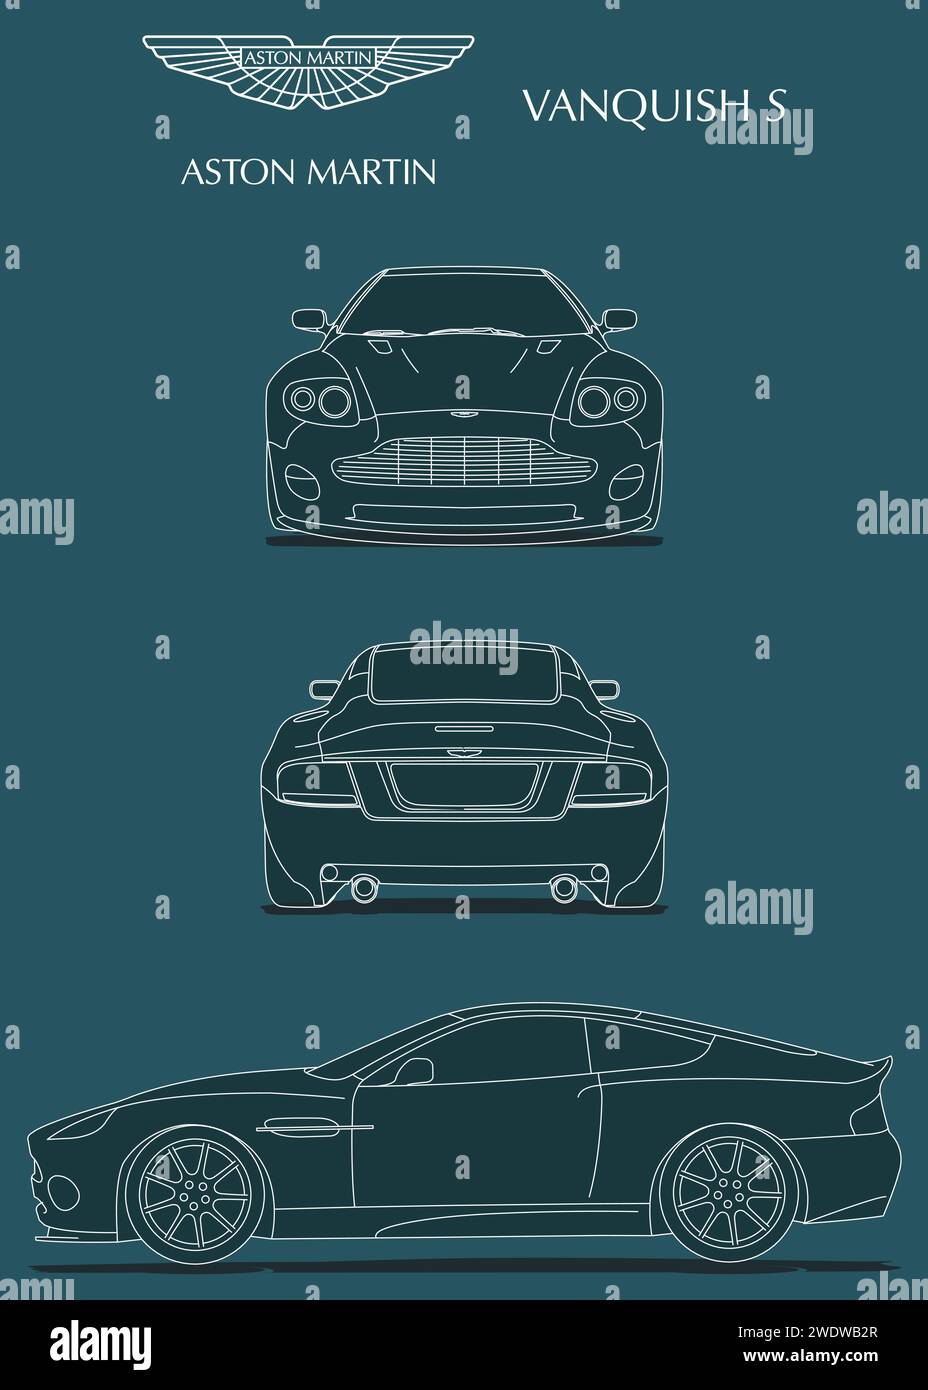 2005 Aston Martin Vanquish progetto automobilistico Illustrazione Vettoriale